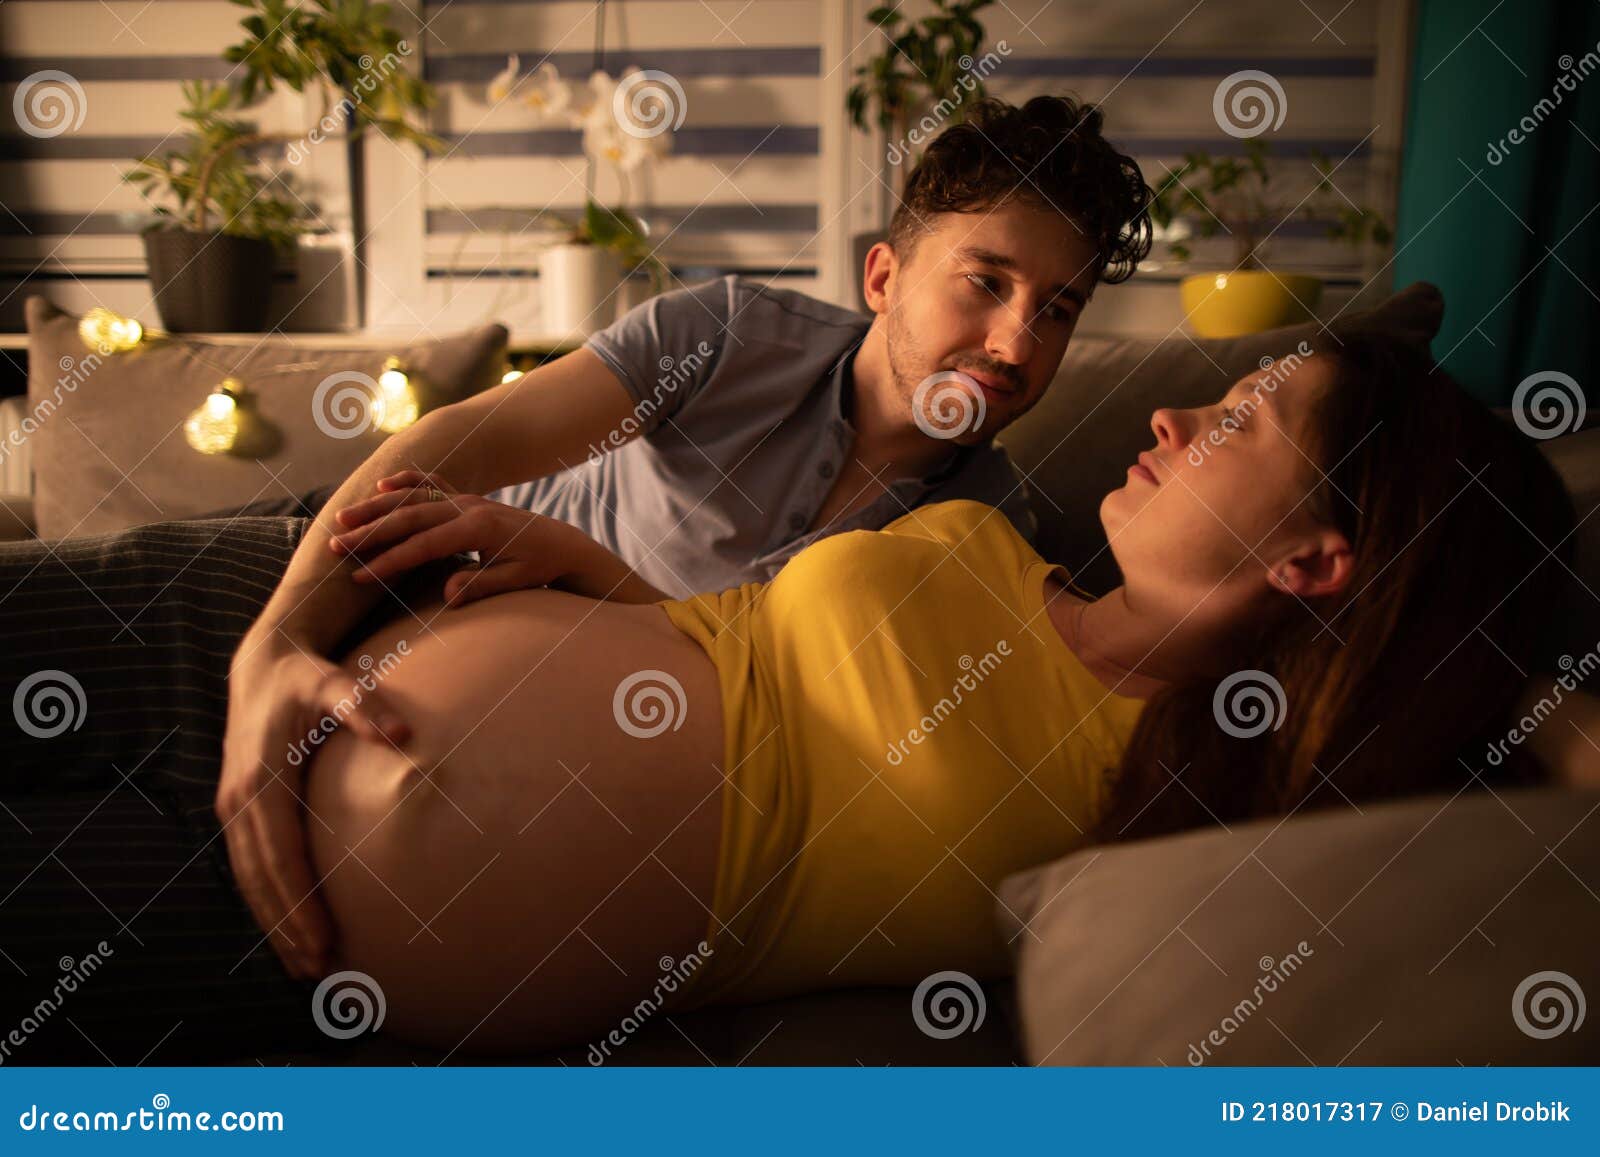 Русское беременна измена. Муж обнимает беременную жену. Муж обнимает супругу. Муж обнимает жену в кровати. Лежим на кровати с женой с беременной.